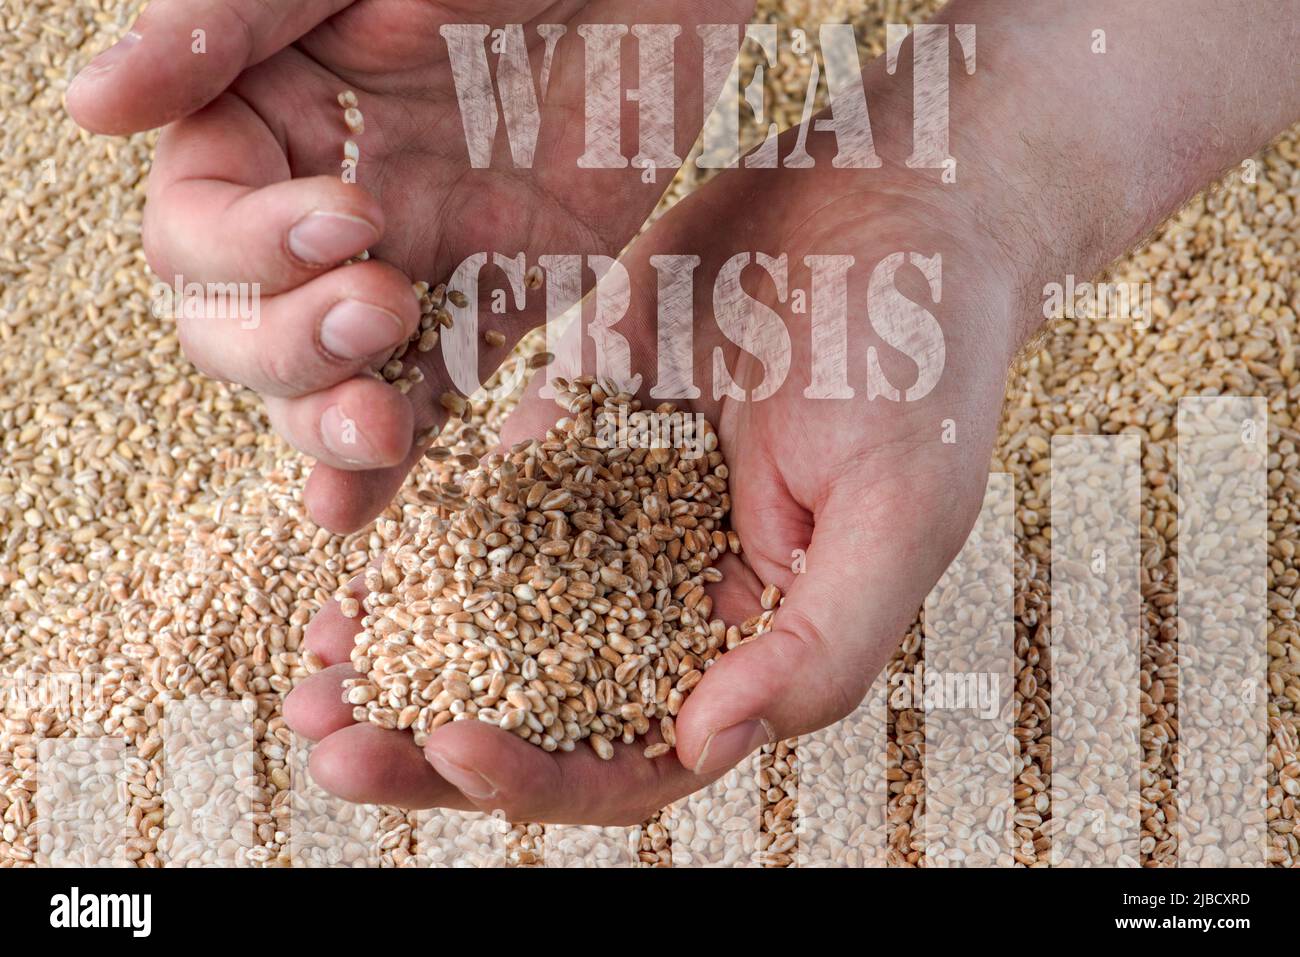 Weizenkrise, Mangel an Getreide und Getreide. Weizenkörner in der Hand, vor dem Hintergrund des Getreides. Das Konzept der weltweiten Nahrungsmittelkrise Stockfoto